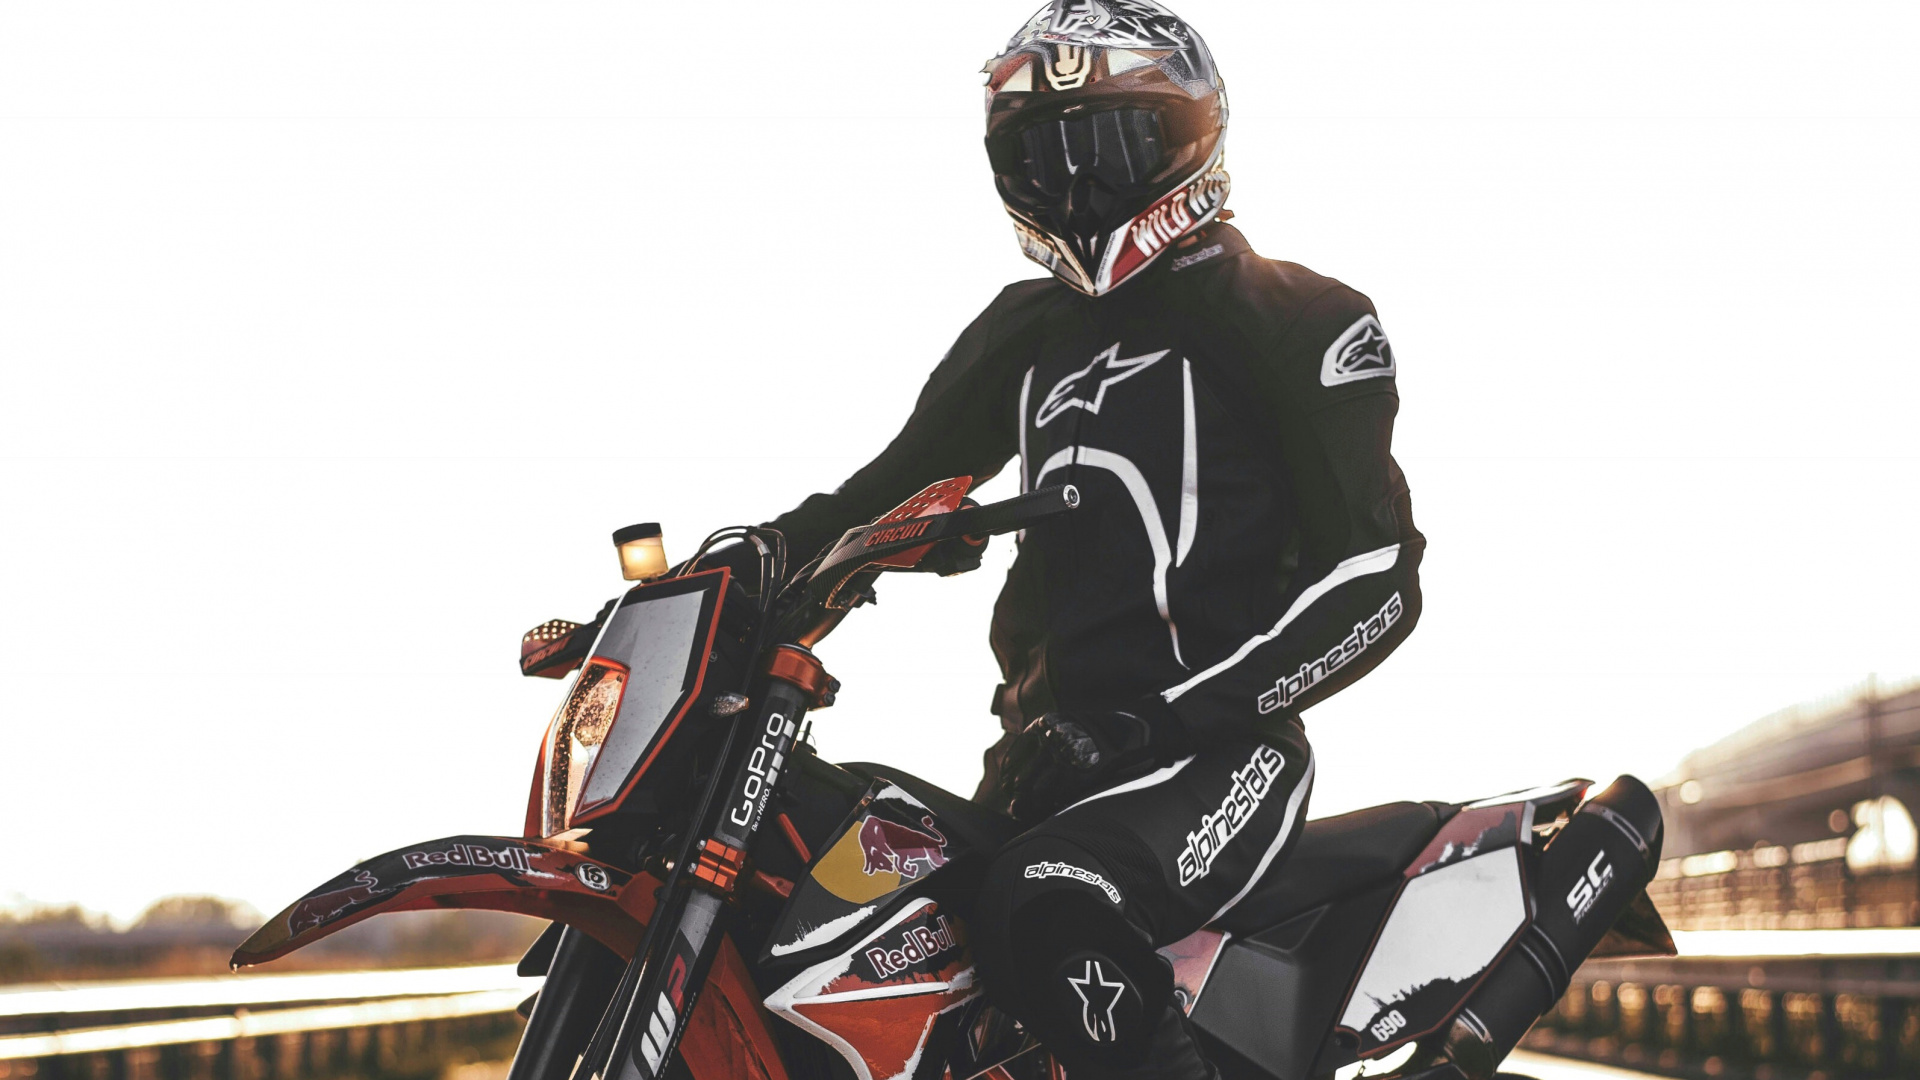 摩托车头盔, 滑胎, 摩托车越野赛, 摩托车赛车, 摩托车手 壁纸 1920x1080 允许